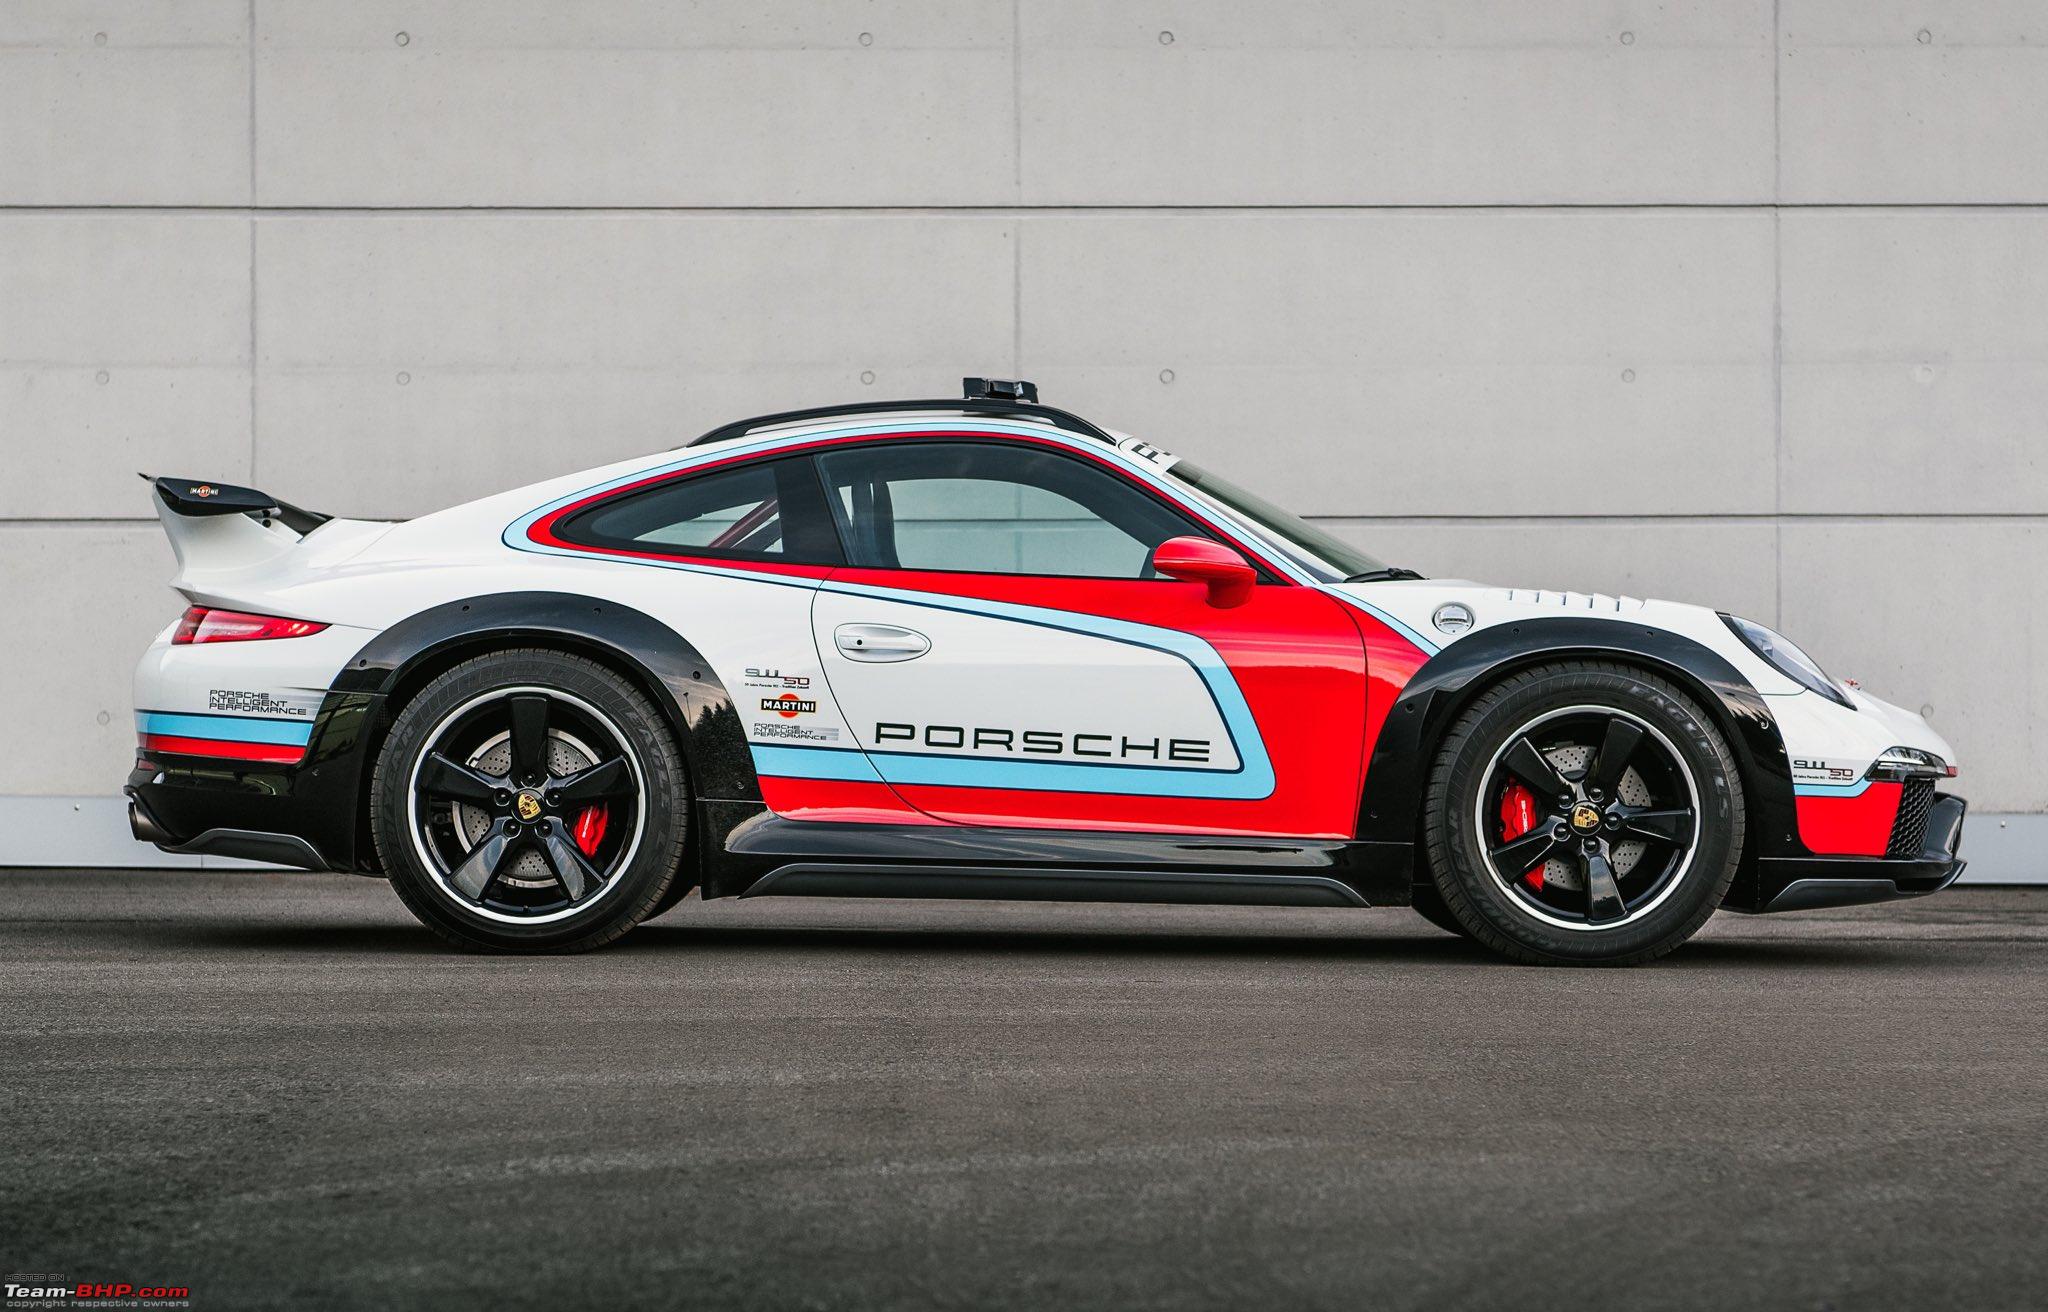 2013 Porsche 904 Living Legend Concept